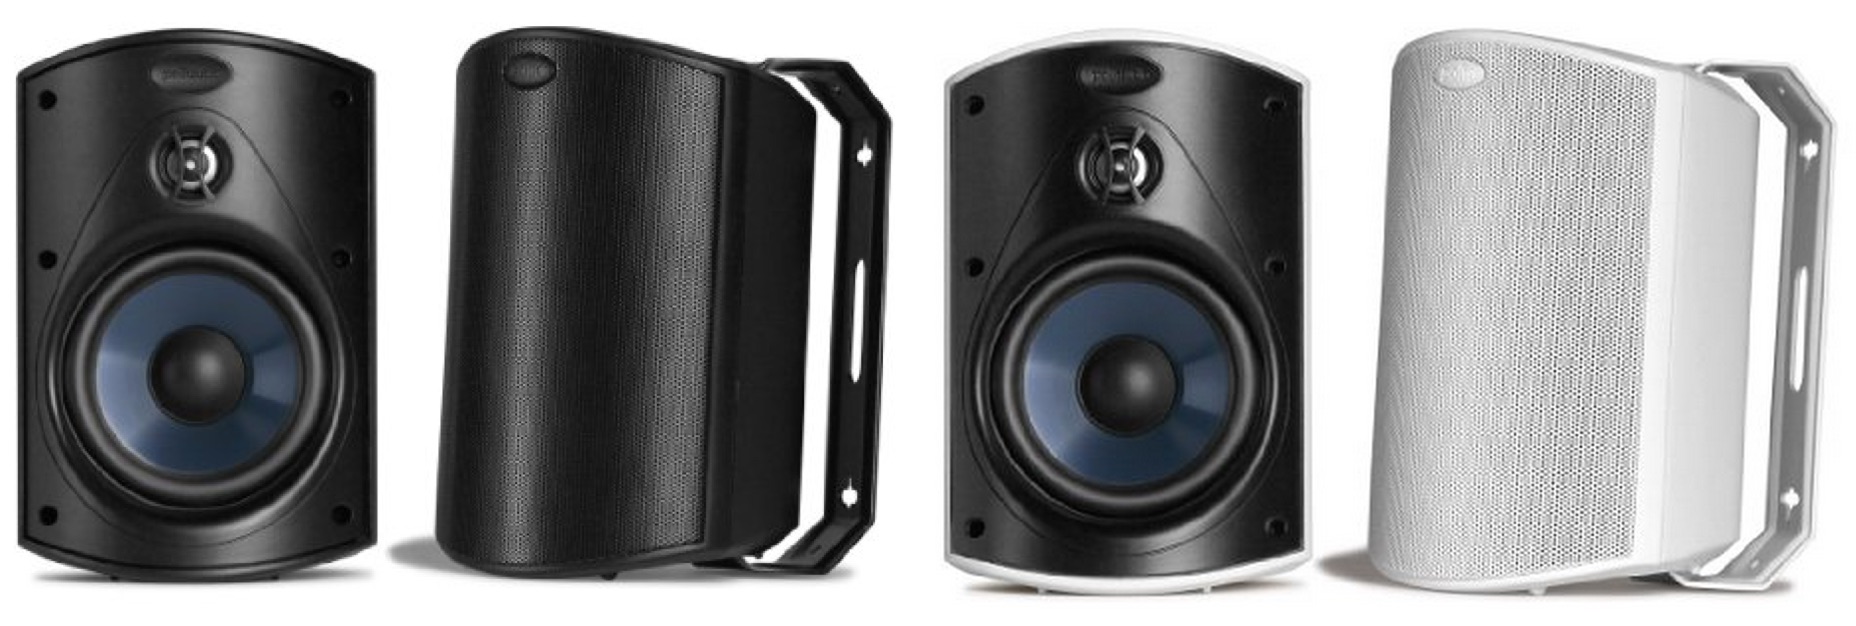 Polk Audio Atrium 4 all-weather speakers in black or white, pair: $80 ...